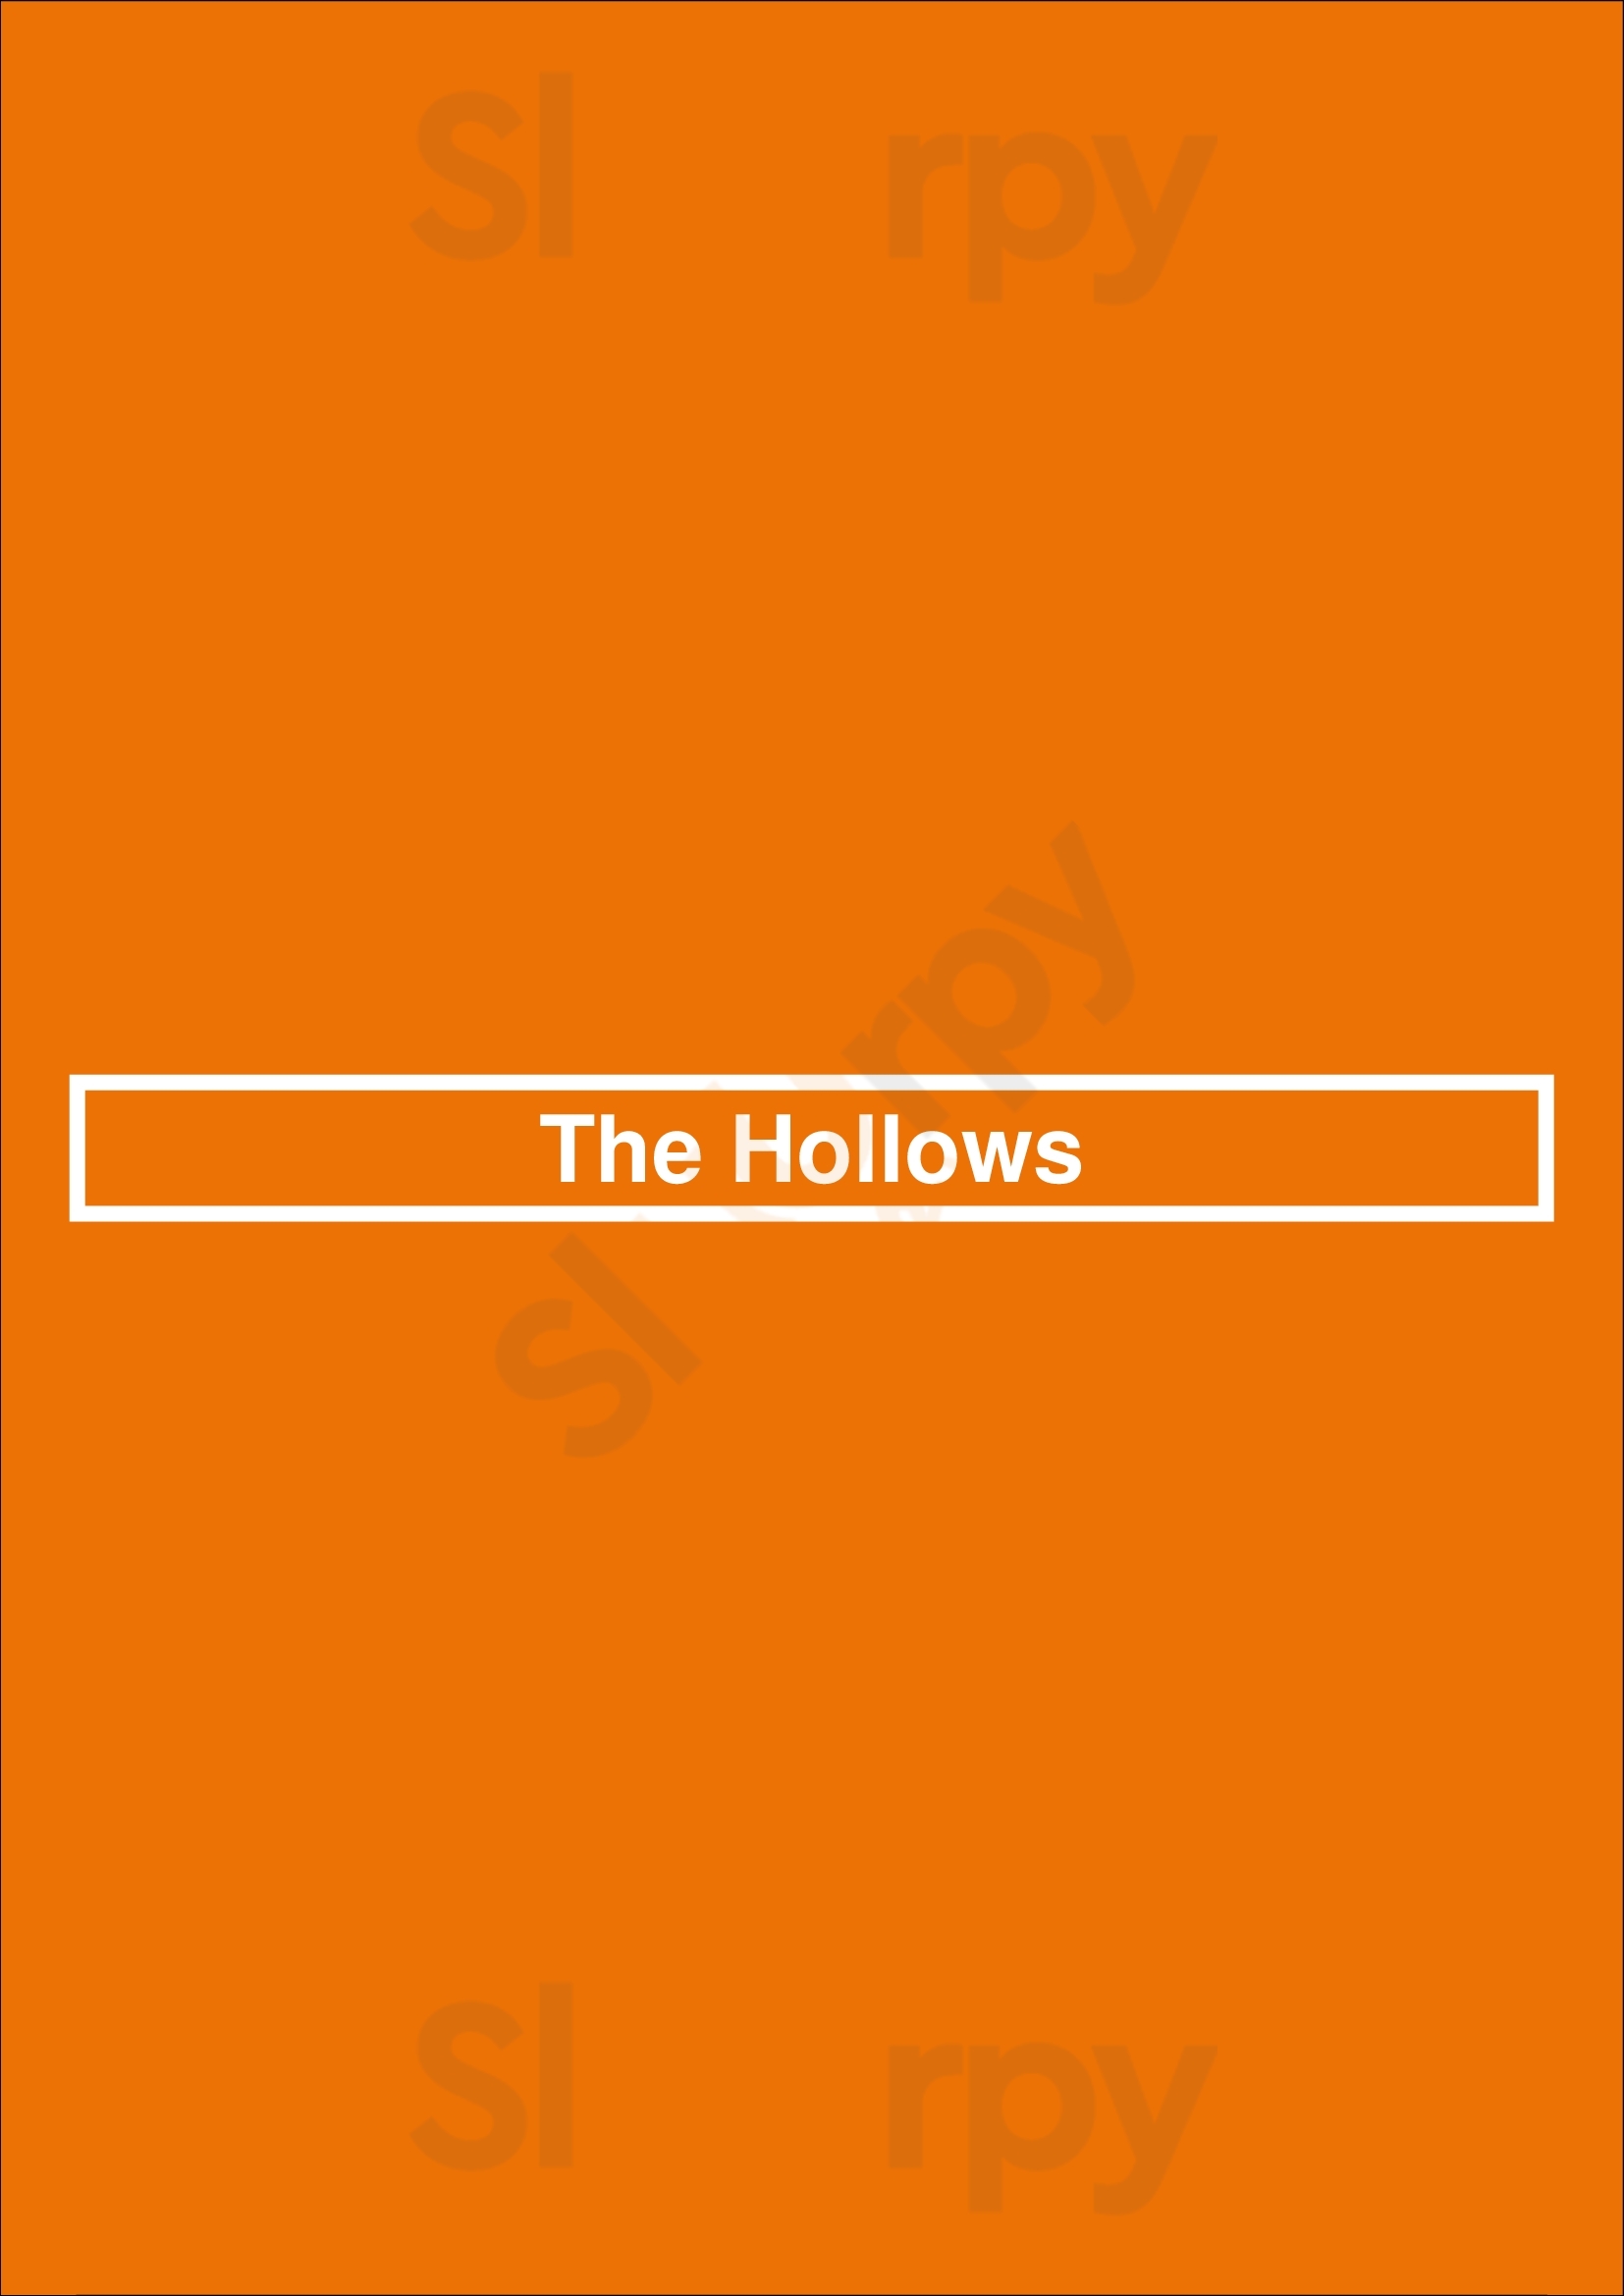 The Hollows Saskatoon Menu - 1